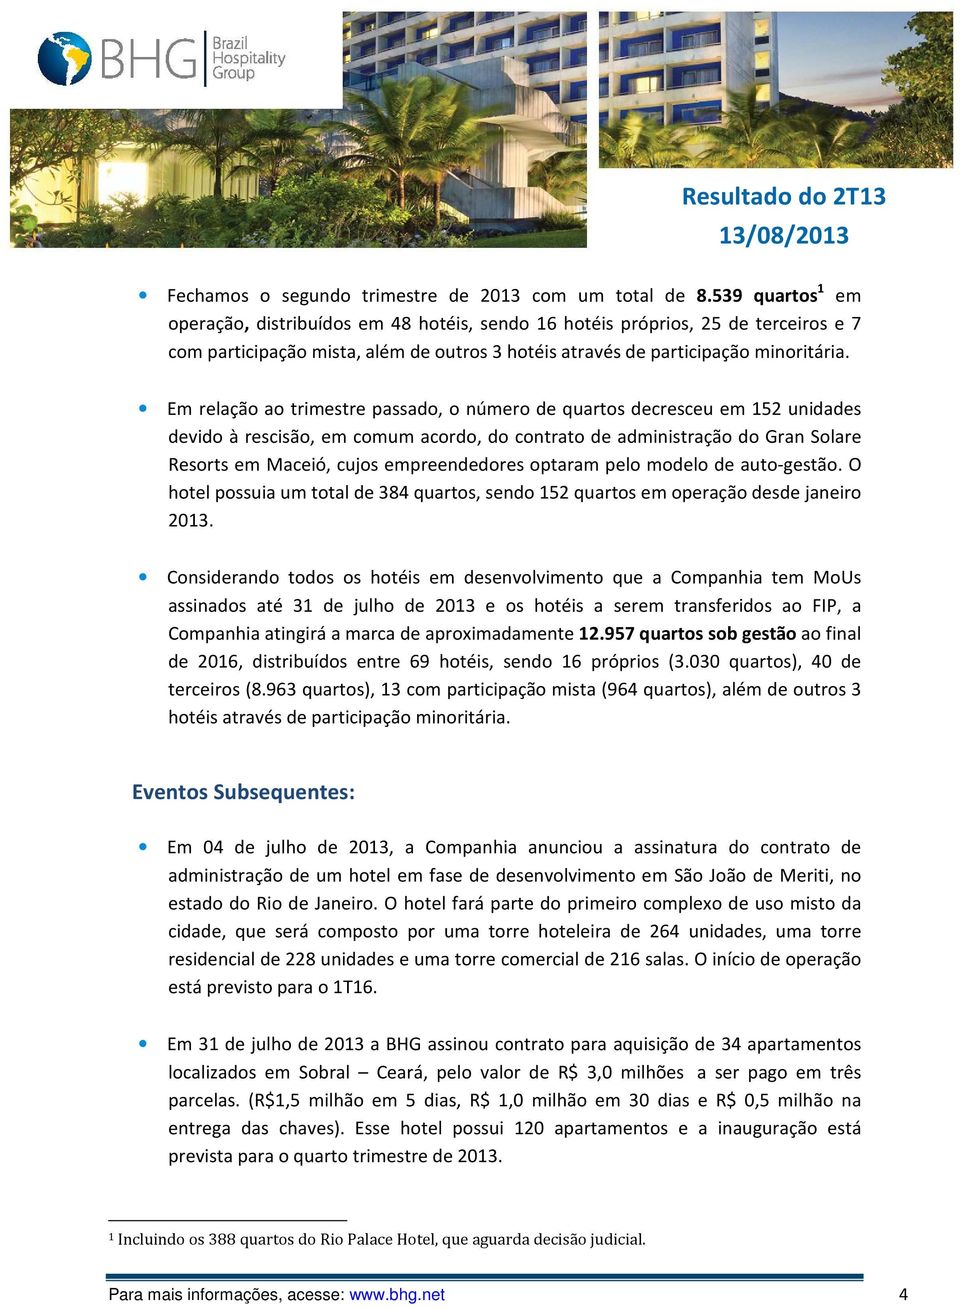 Em relação ao trimestre passado, o número de quartos decresceu em 152 unidades devido à rescisão, em comum acordo, do contrato de administração do Gran Solare Resorts em Maceió, cujos empreendedores